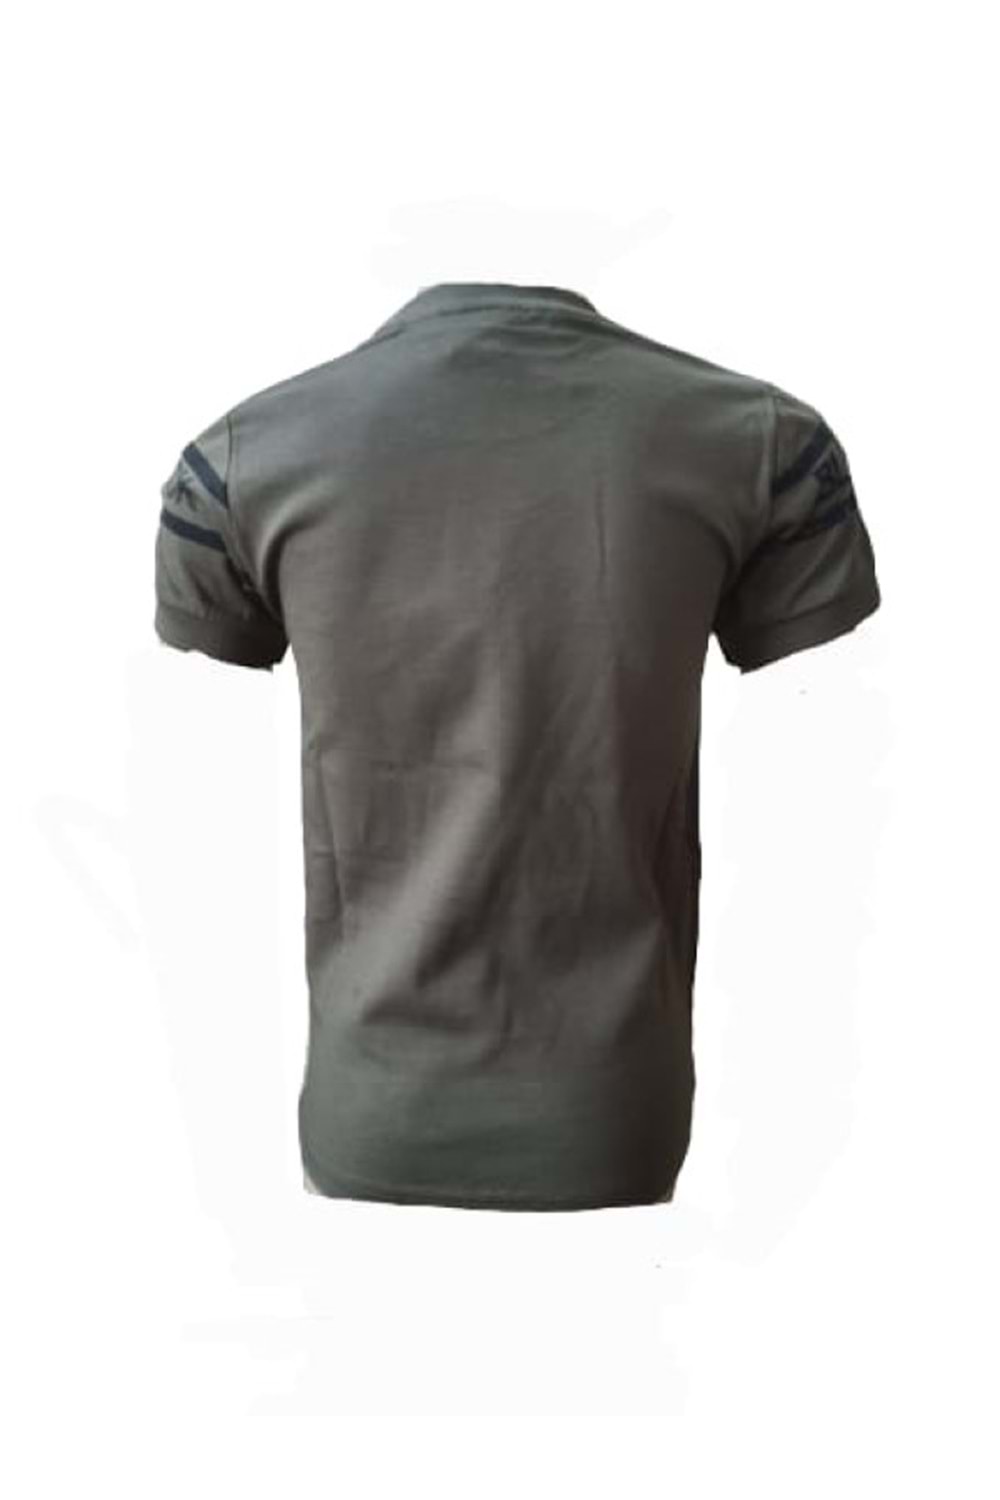 Petitox Çocuk Erkek Baskılı T-shirt 4003 - Haki - 8 YAŞ